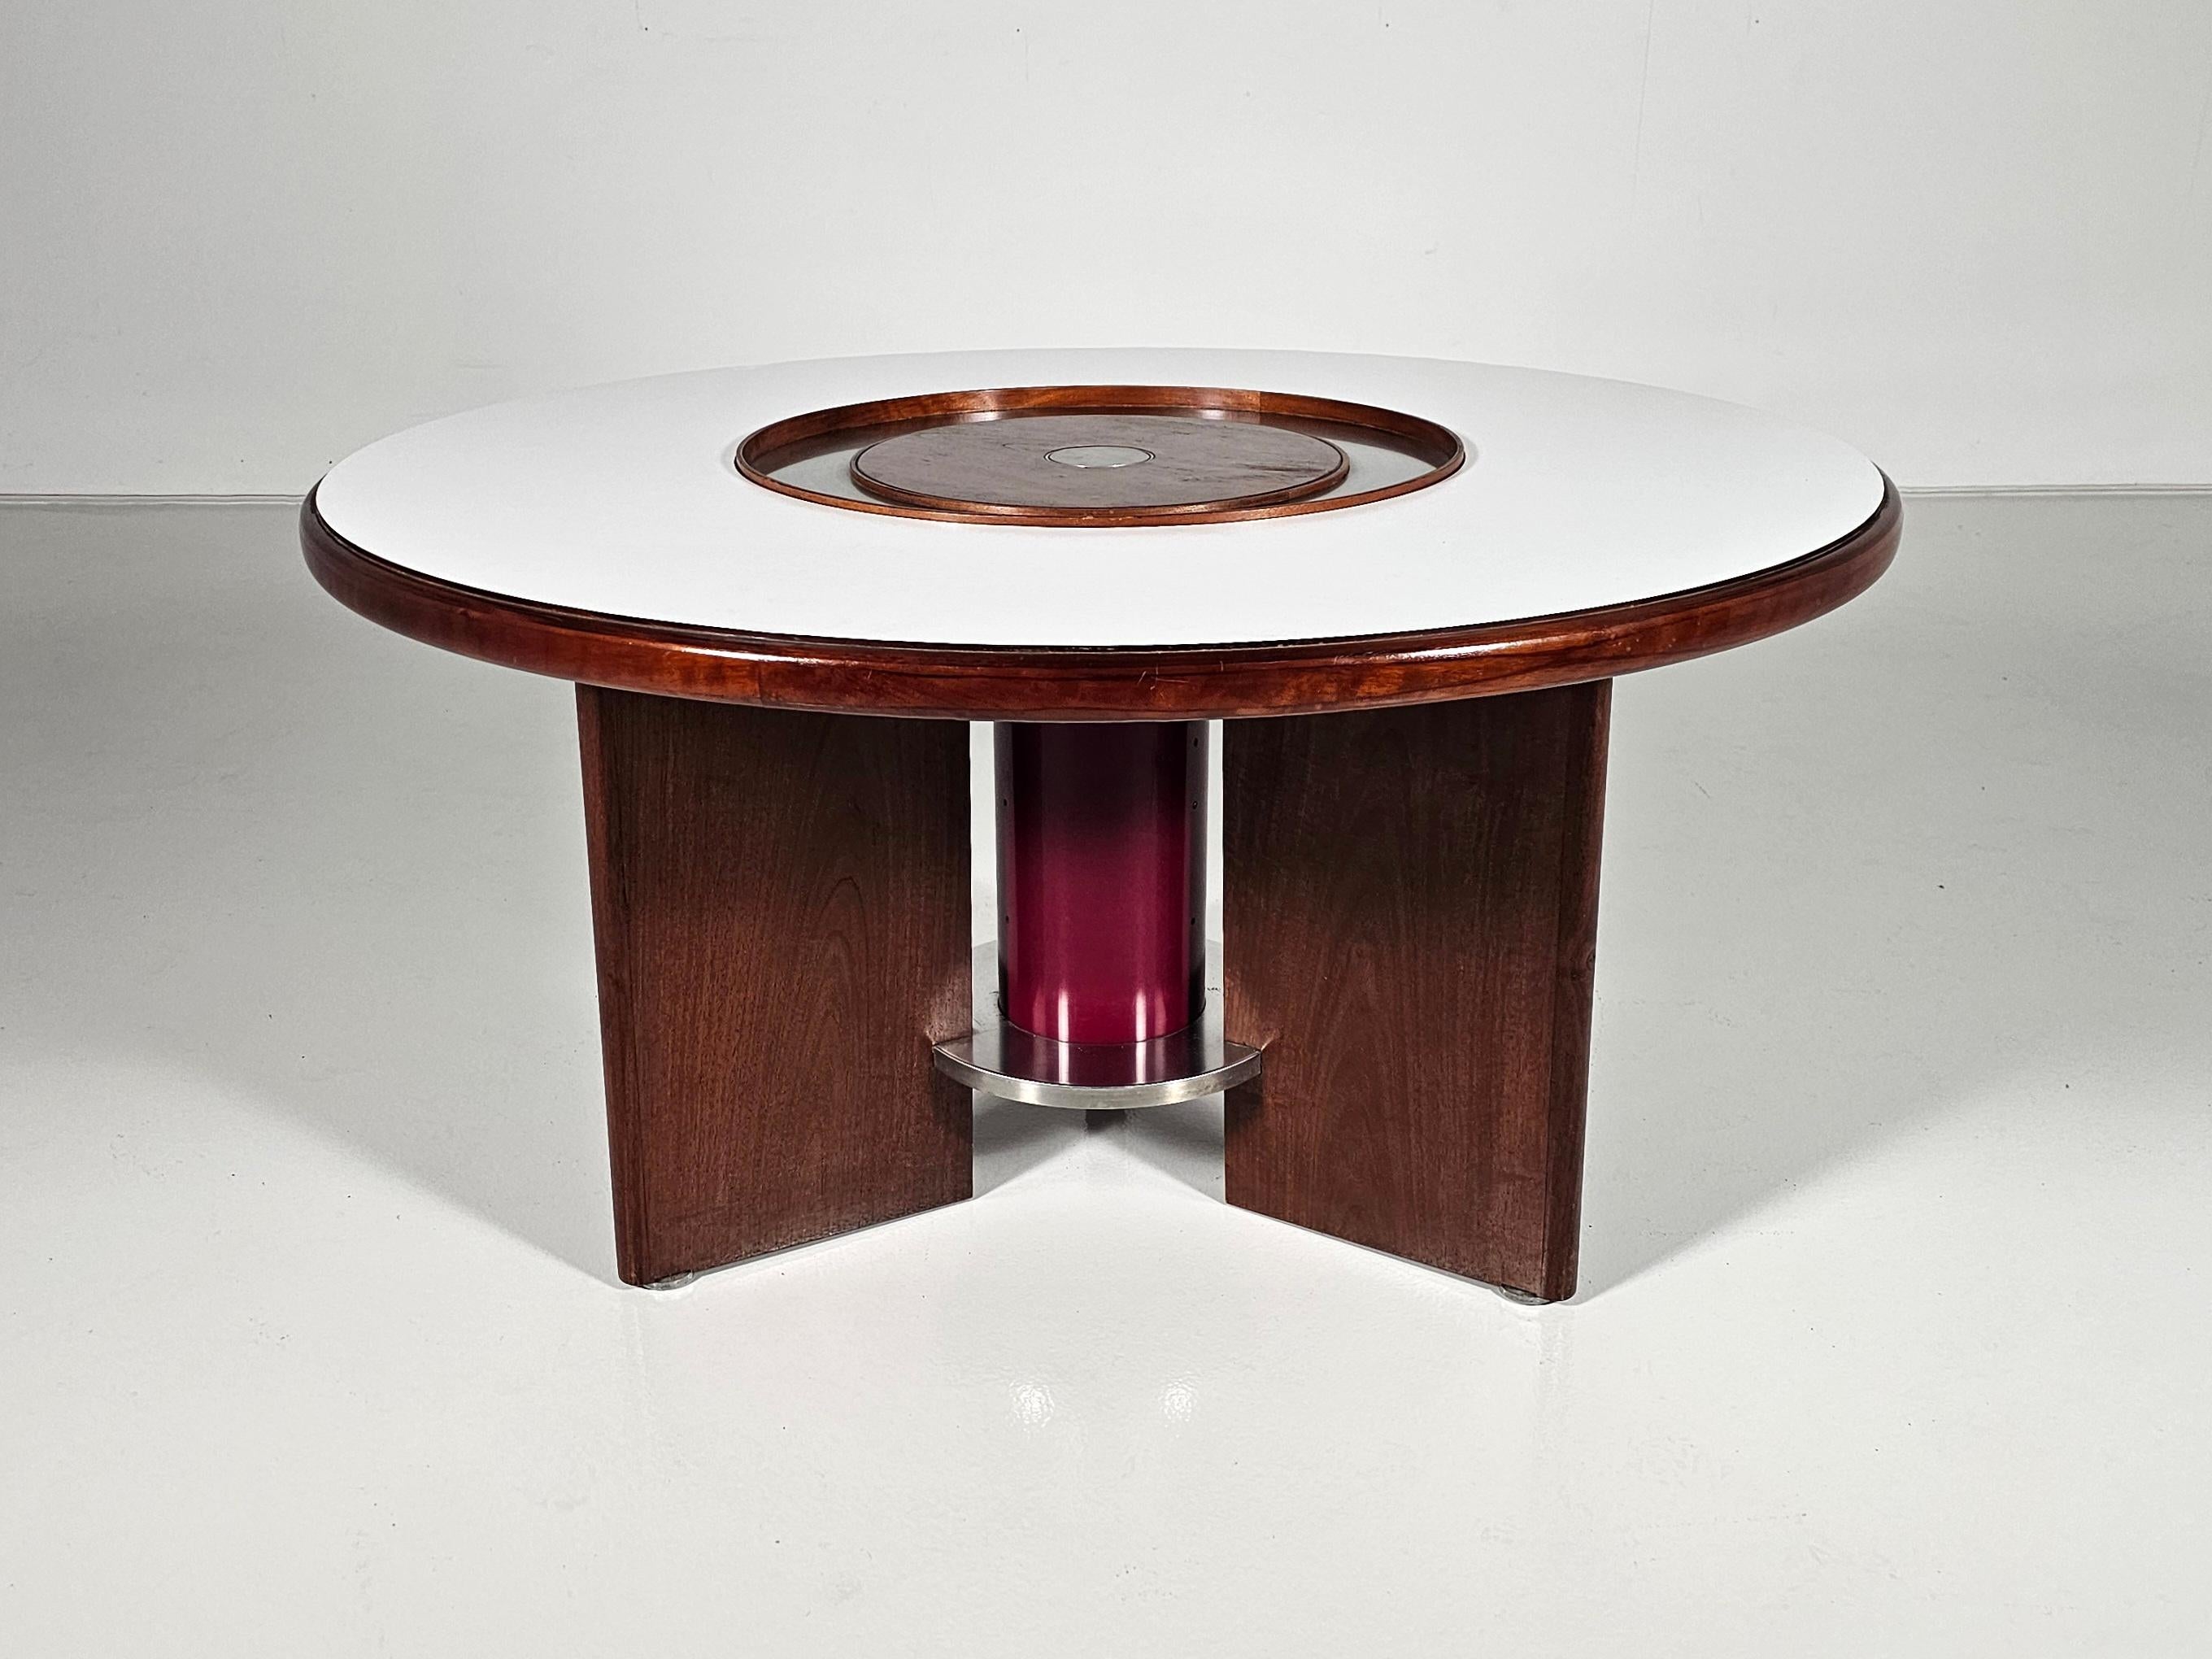 Schöner Tisch, entworfen vom Architekten Silvio Coppola und hergestellt von Bernini.
Besonders raffiniert ist der Mechanismus, mit dem sich der mittlere Teil des Tisches anheben lässt. Ausgestattet mit einem beweglichen Tablett.
Passt hervorragend